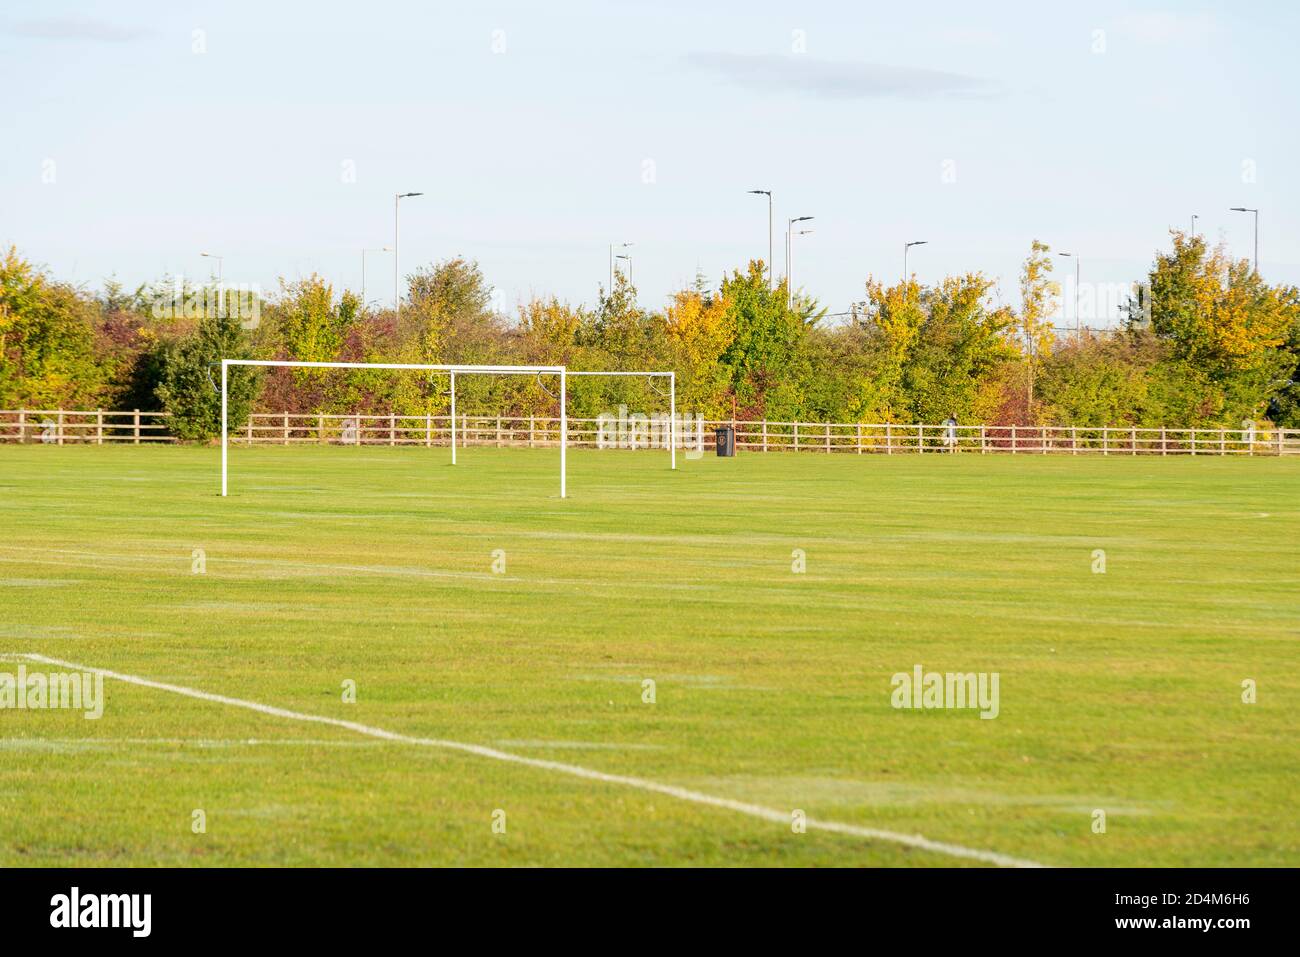 Campos de fútbol del Ashingdon Youth Football Club. Campos de juego privados con una variedad de campos de fútbol de tamaño marcado con puestos de gol. FA club charter Foto de stock